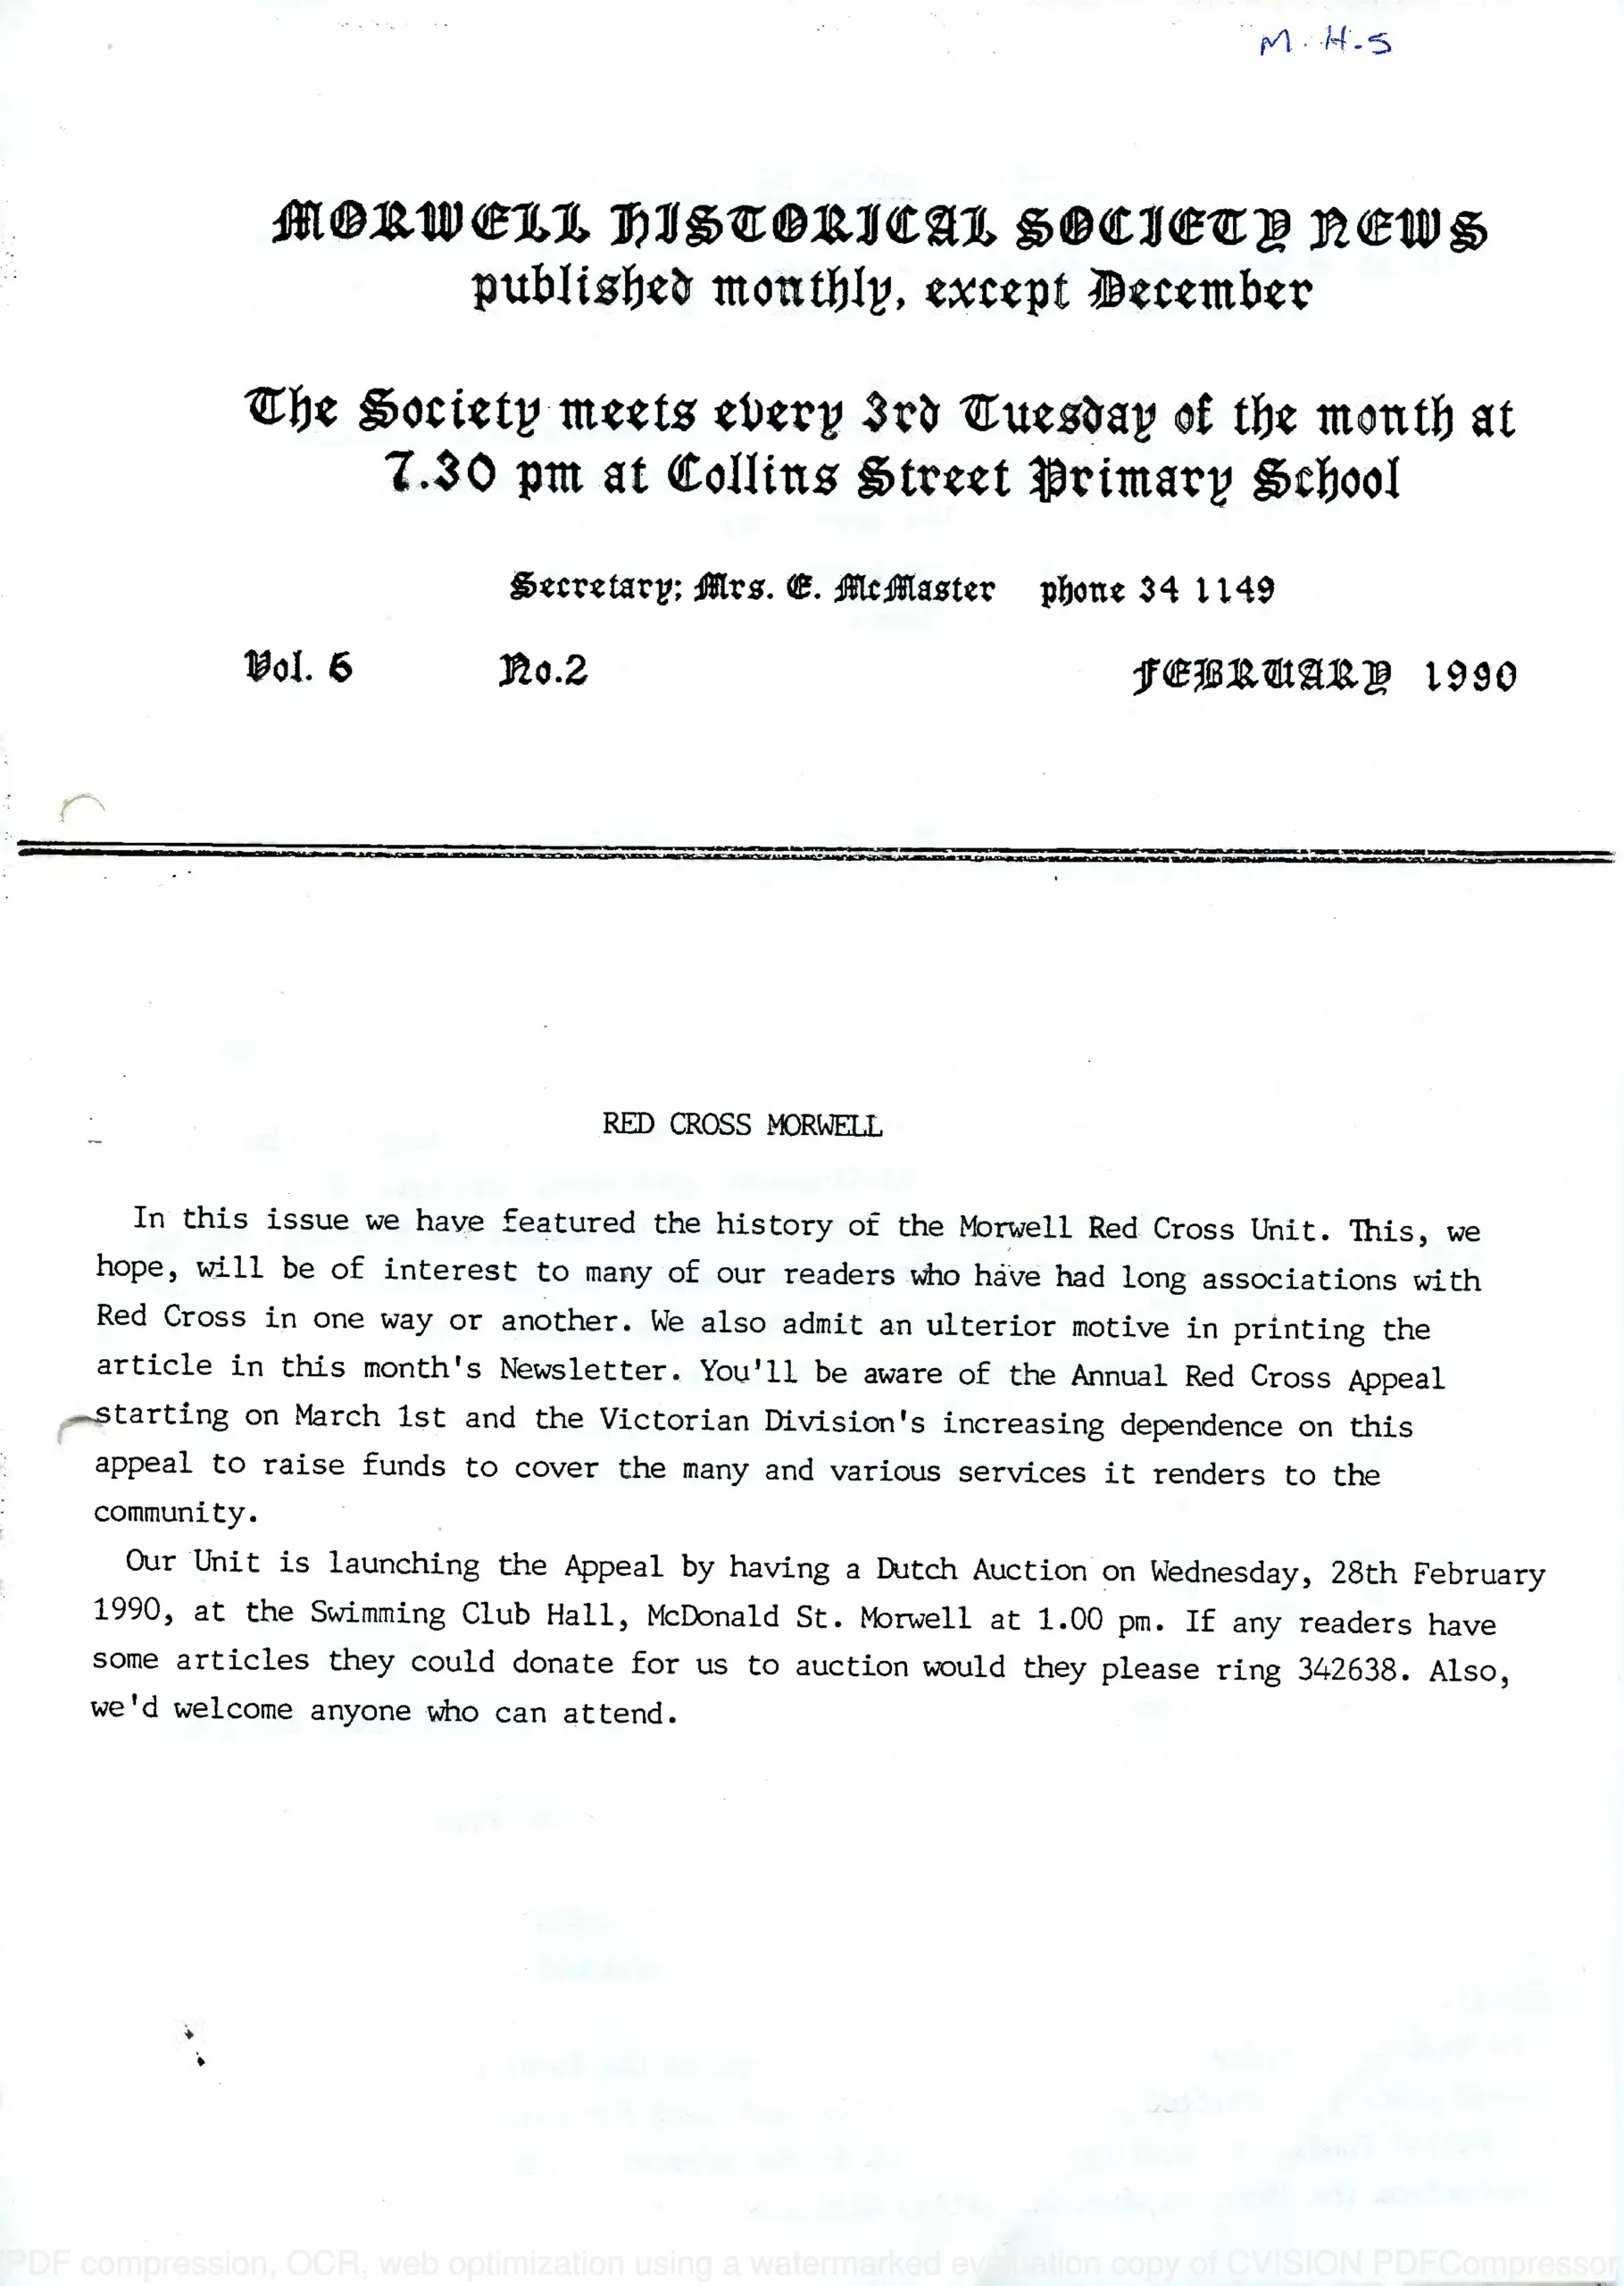 Newsletter February 1990